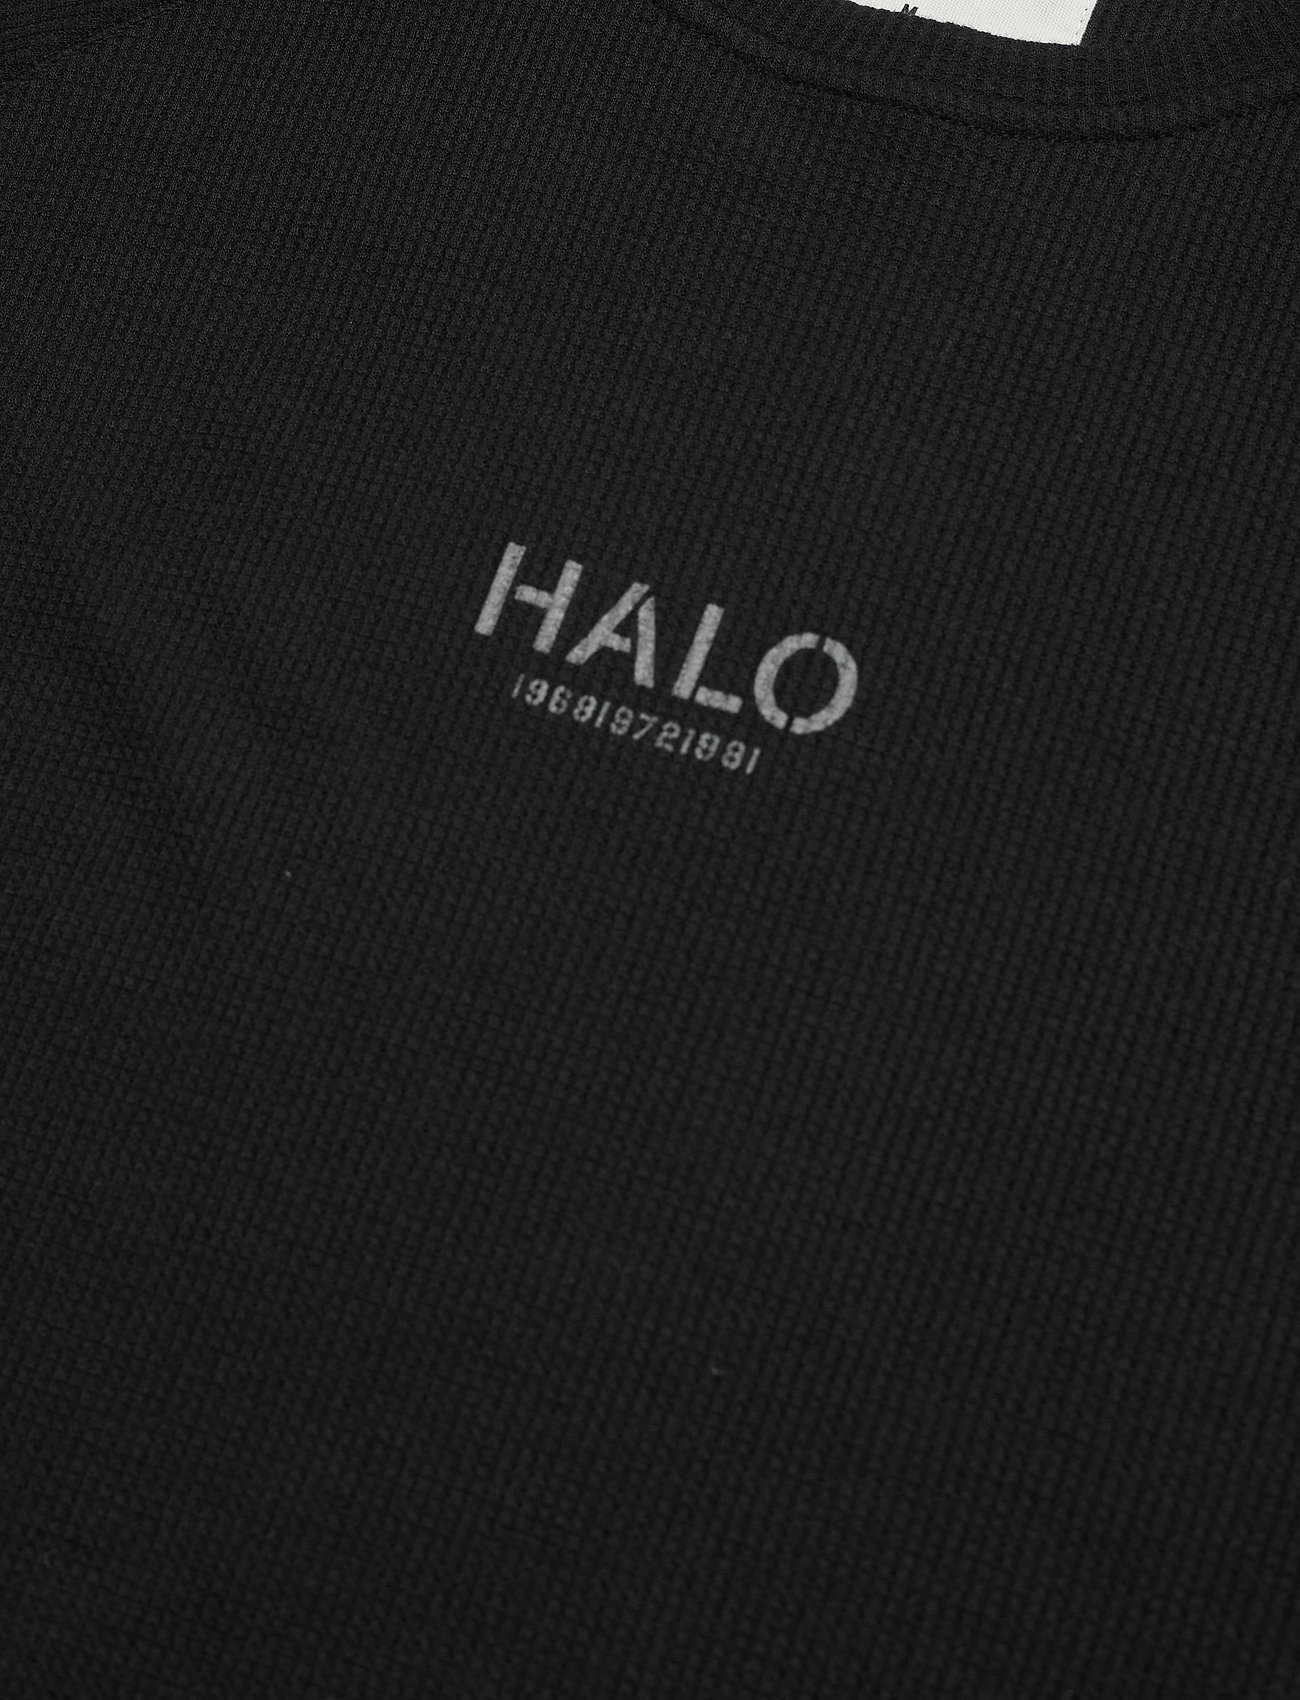 HALO - HALO WAFFLE TEE - black - 2